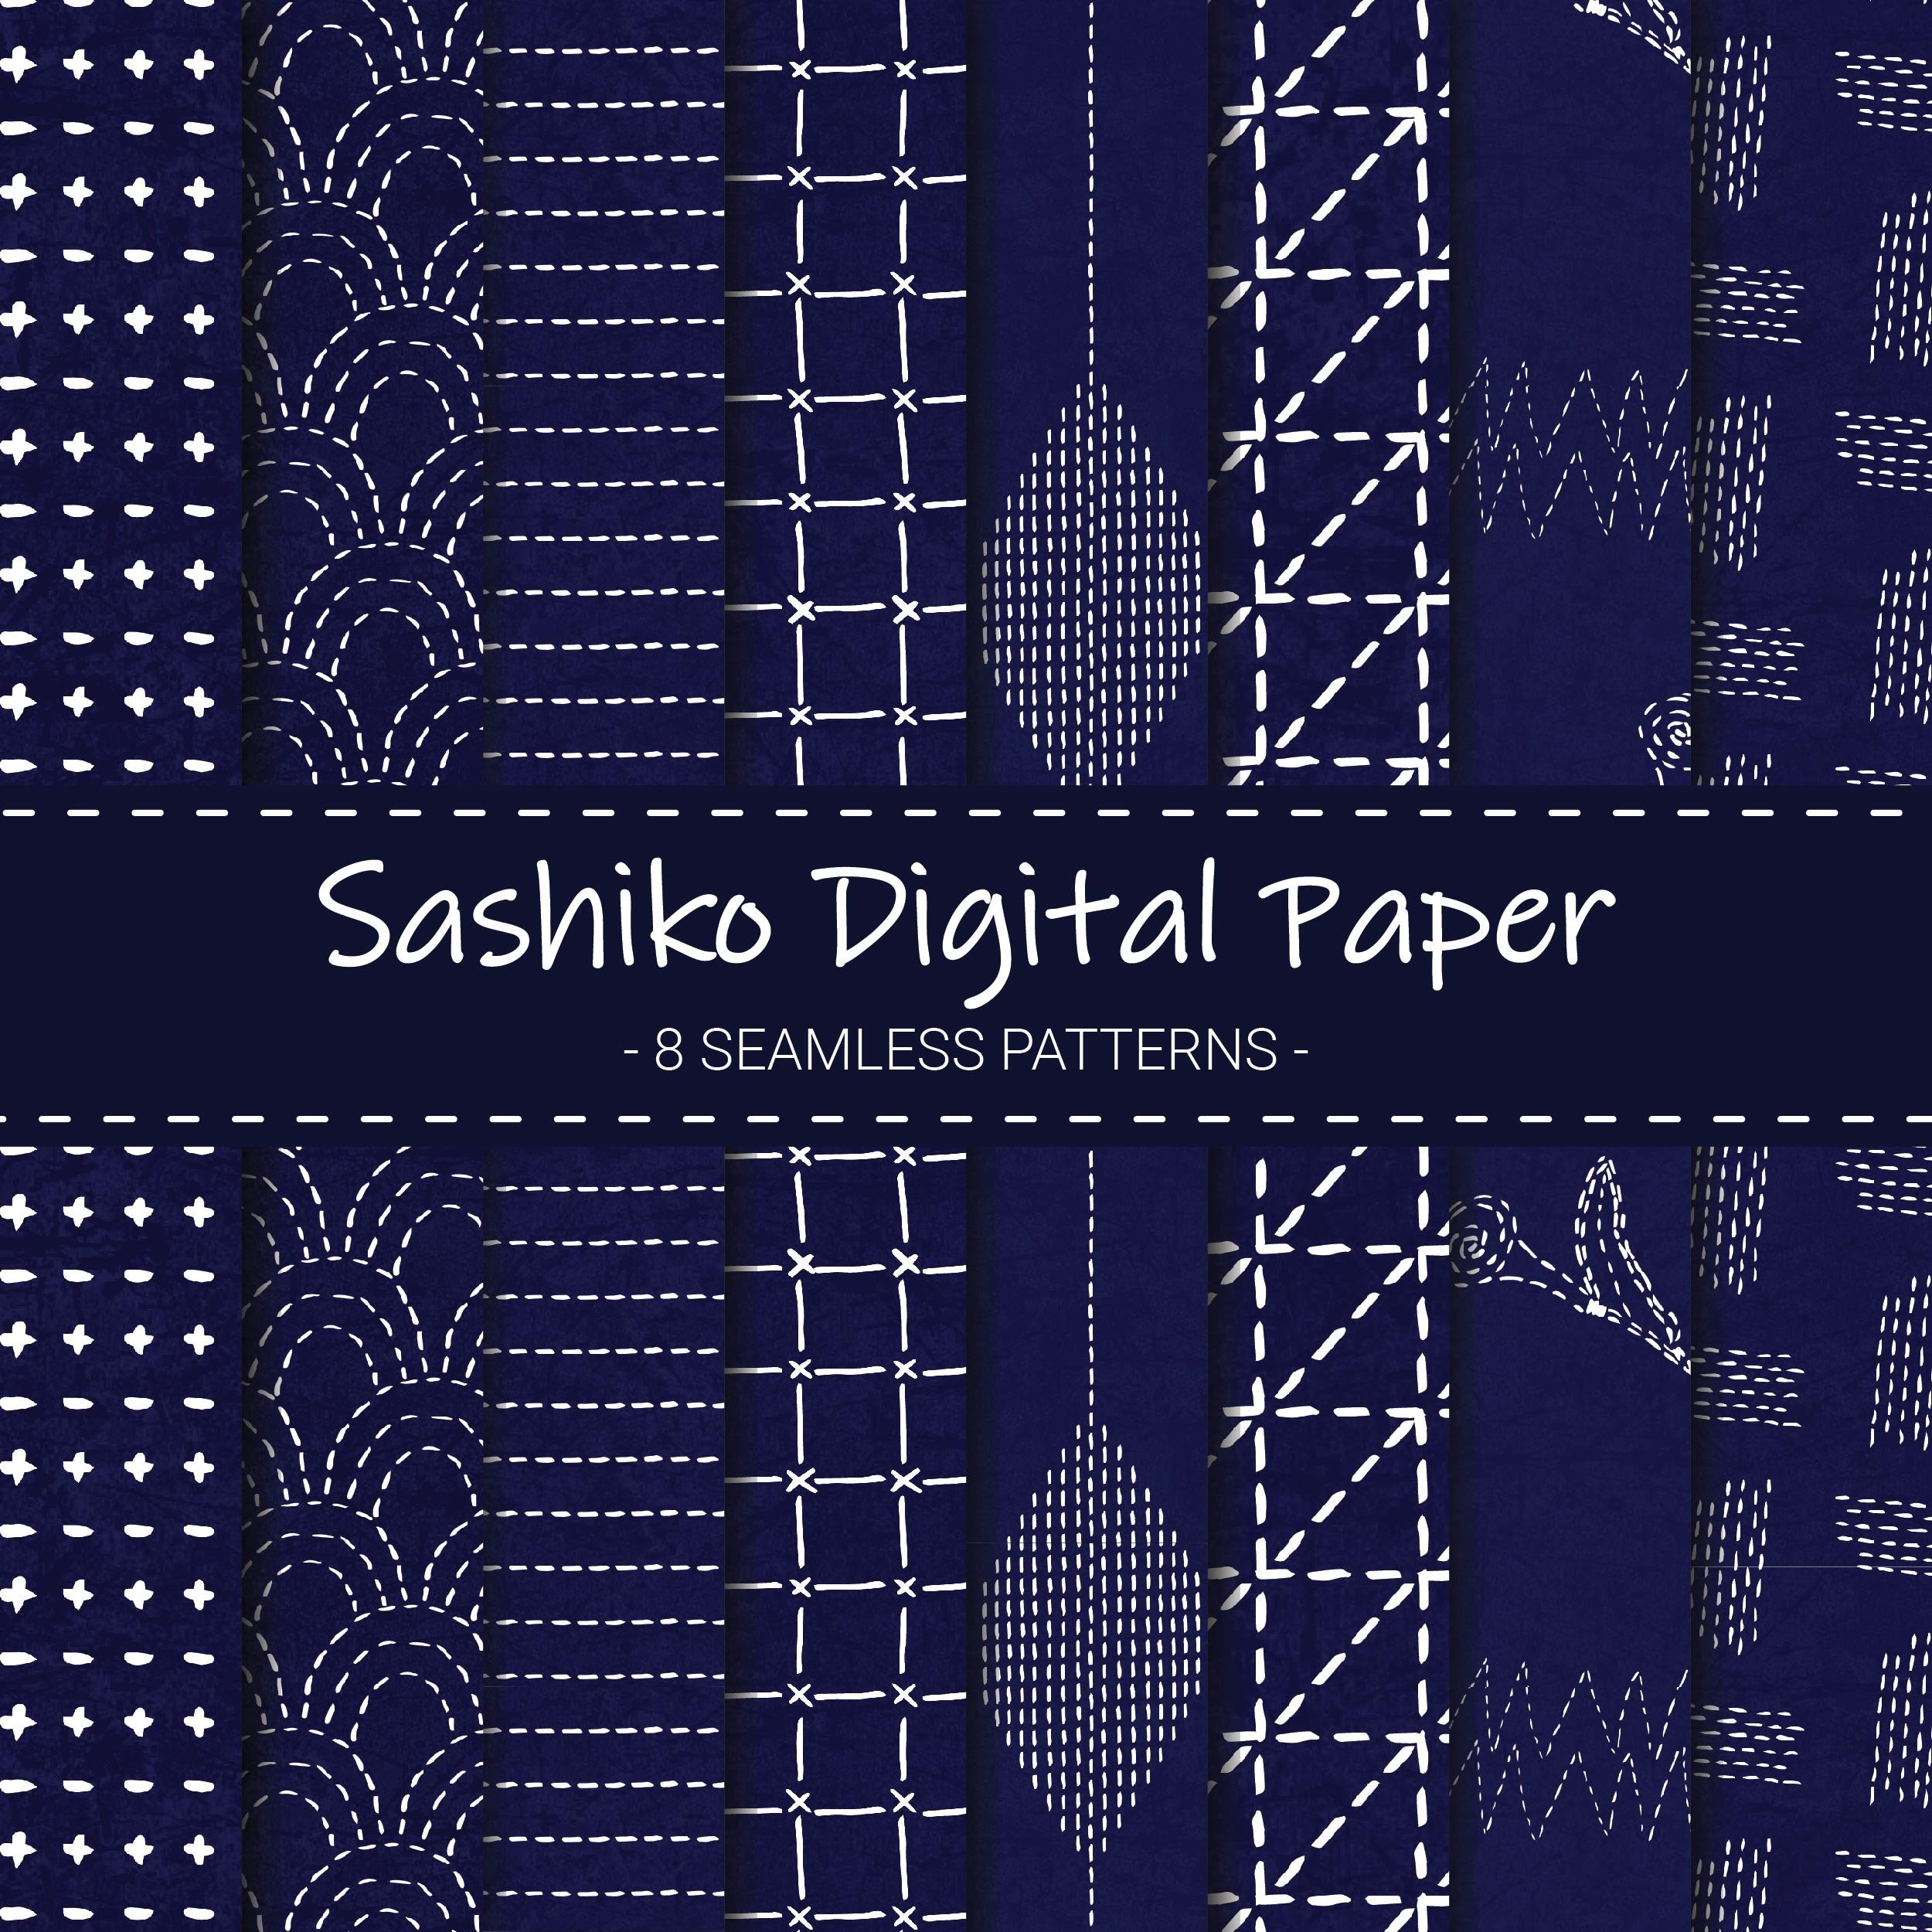 Samurai Jeans Indigo Sashiko Shirt Men's Diamond Stitch Sashiko